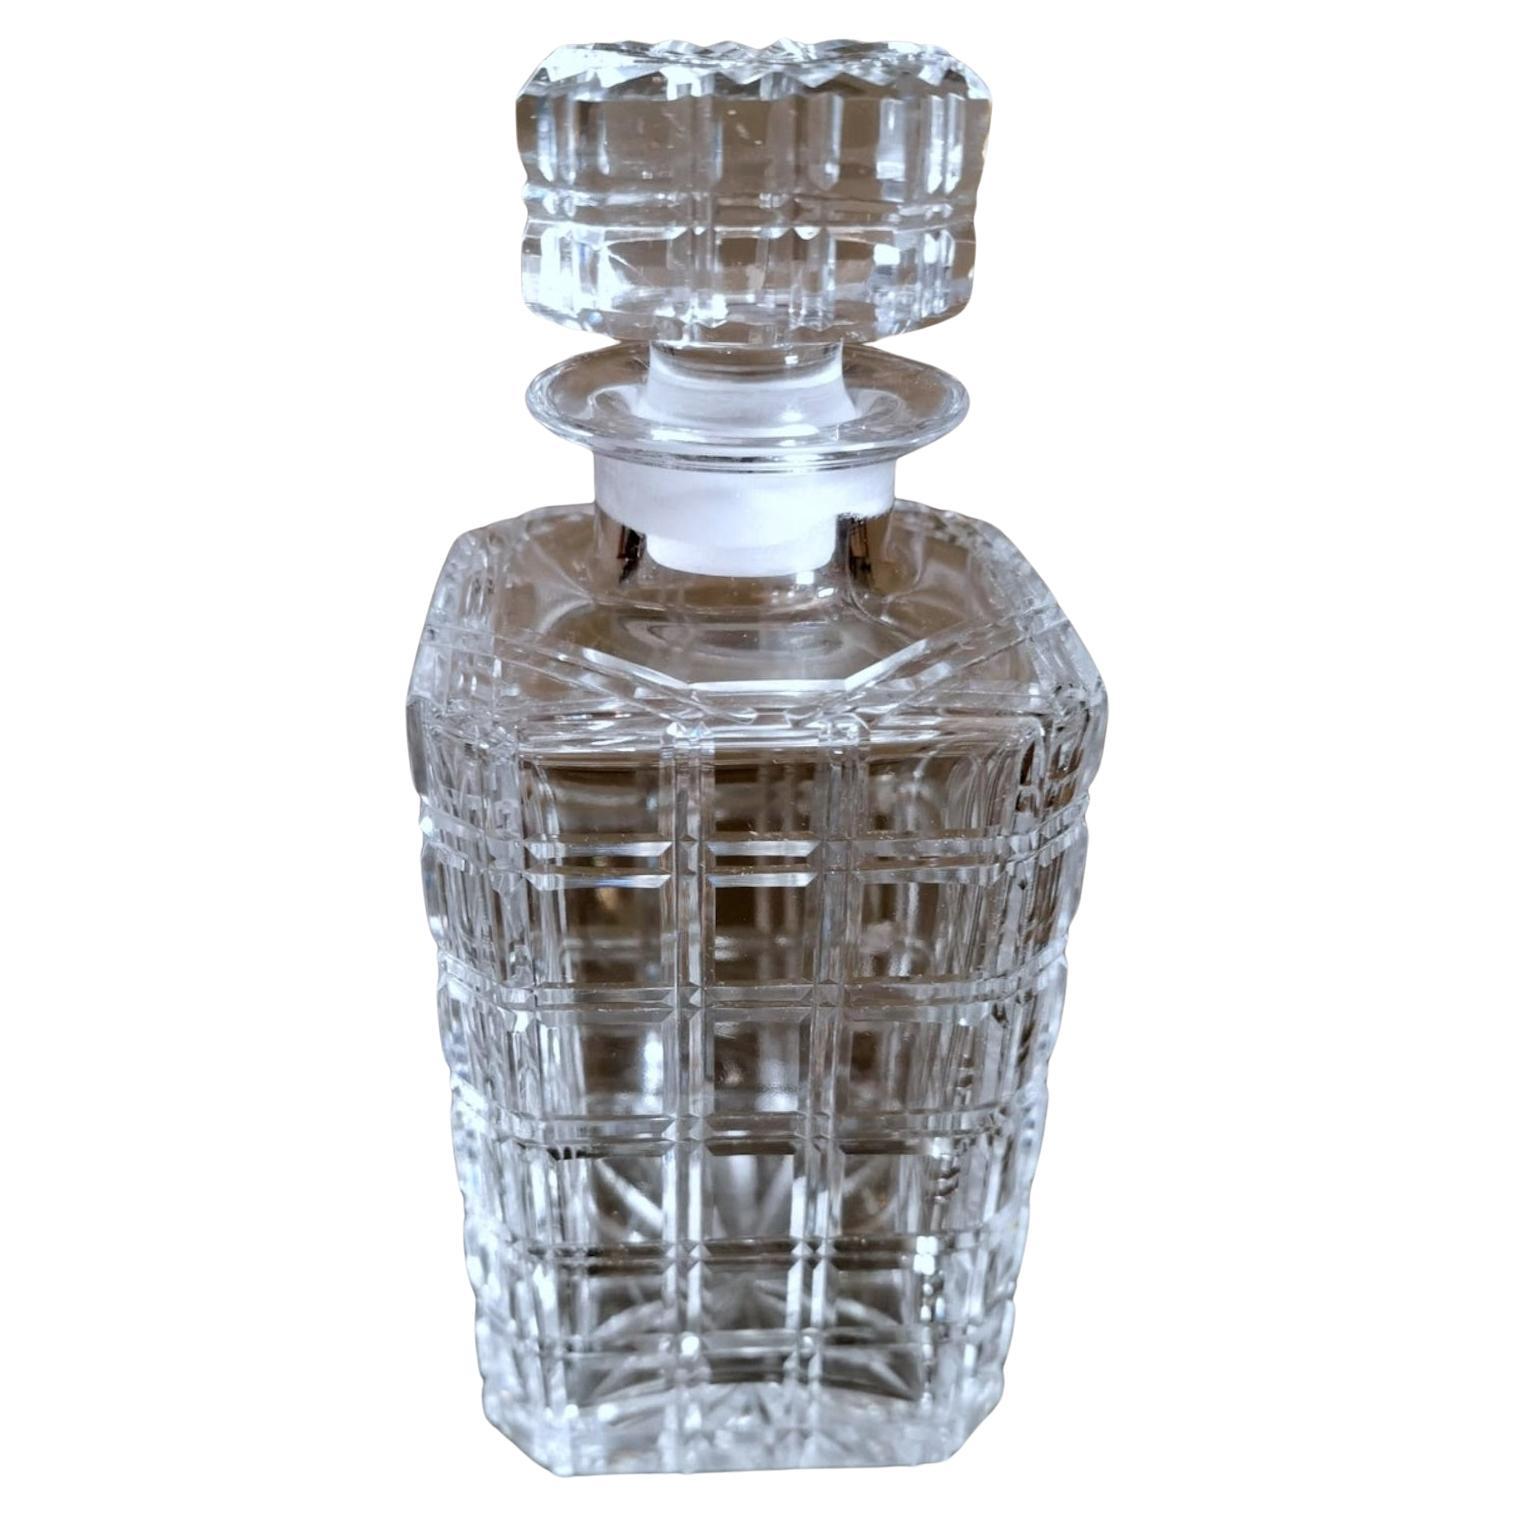 Florentine Handcrafted Crystal Bottle Geschliffen, geschliffen und poliert von Hand